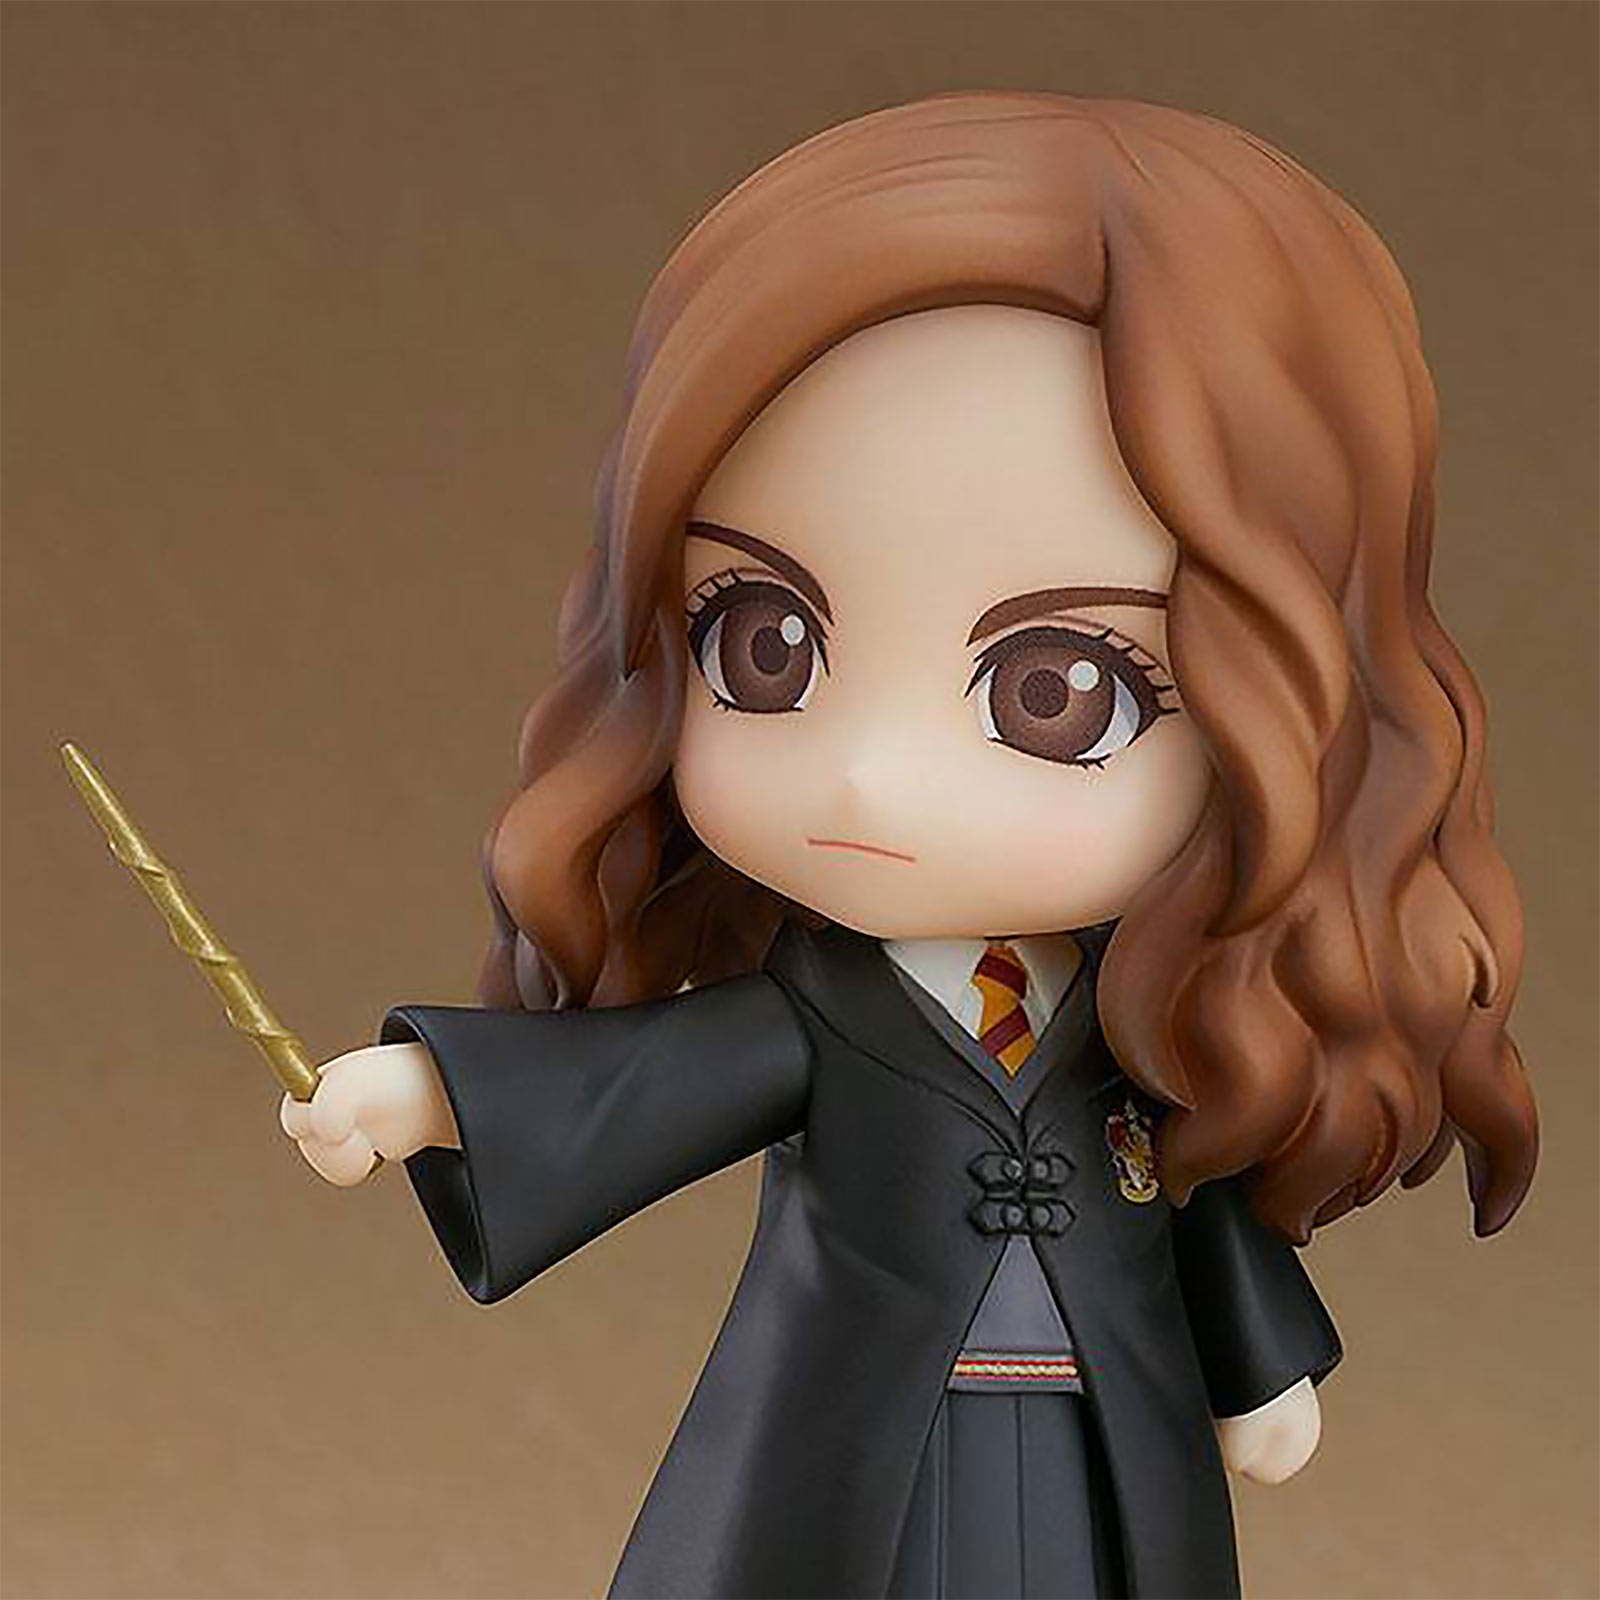 Harry Potter - Hermione Granger Nendoroid Action Figure